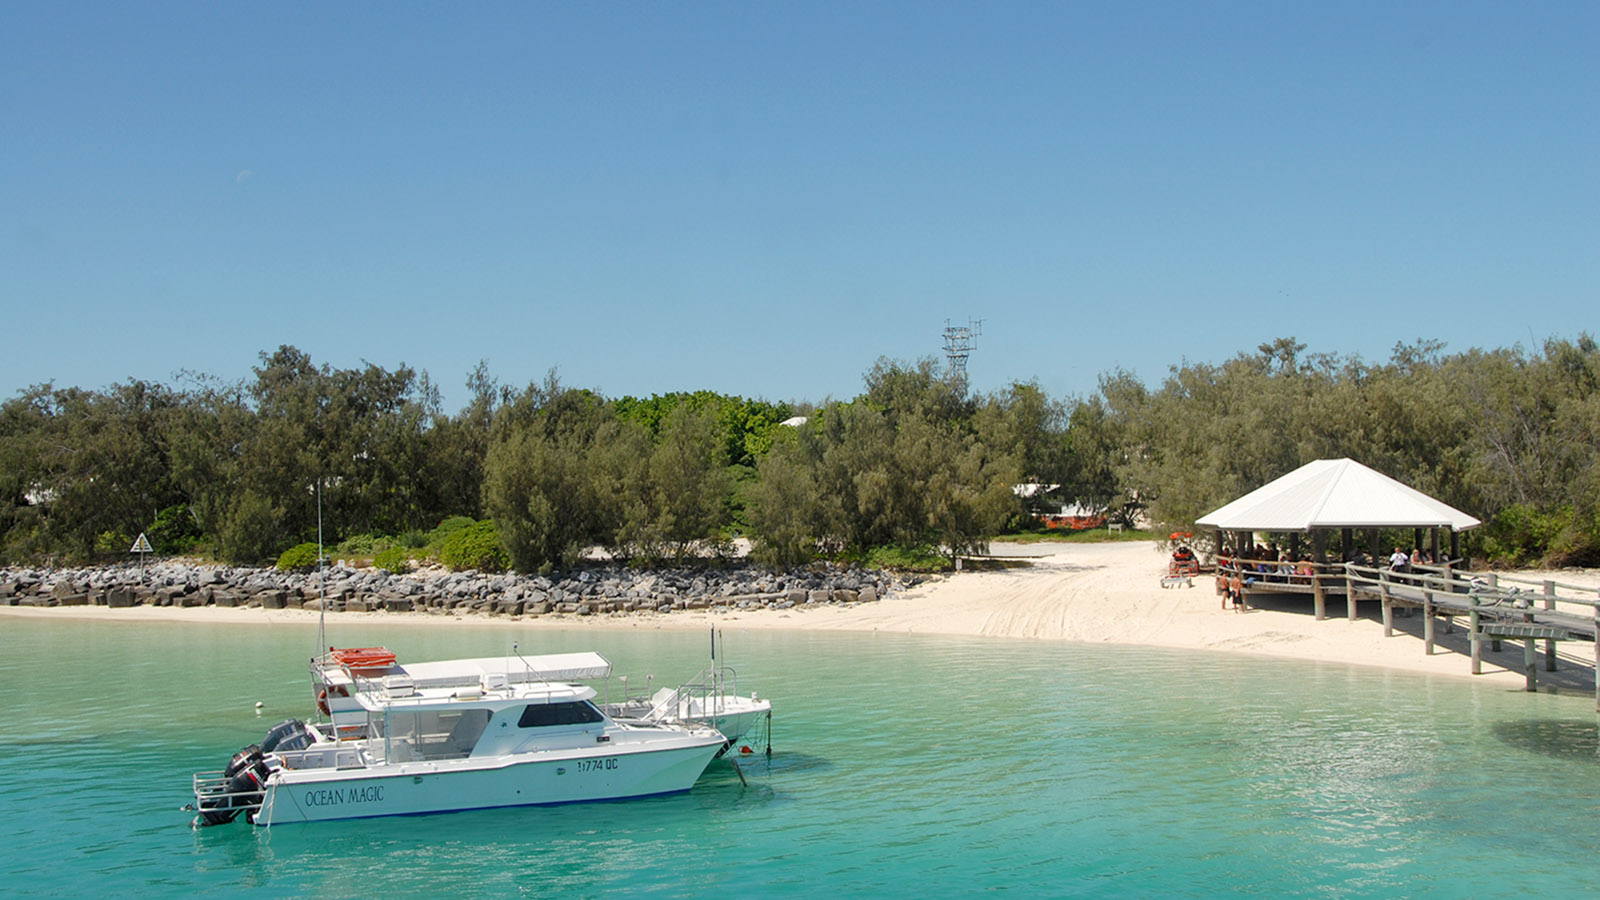 Das Resort von Heron Island besitzt eine eigene Pier für die Shuttleboote. Foto: Hilke Maunder